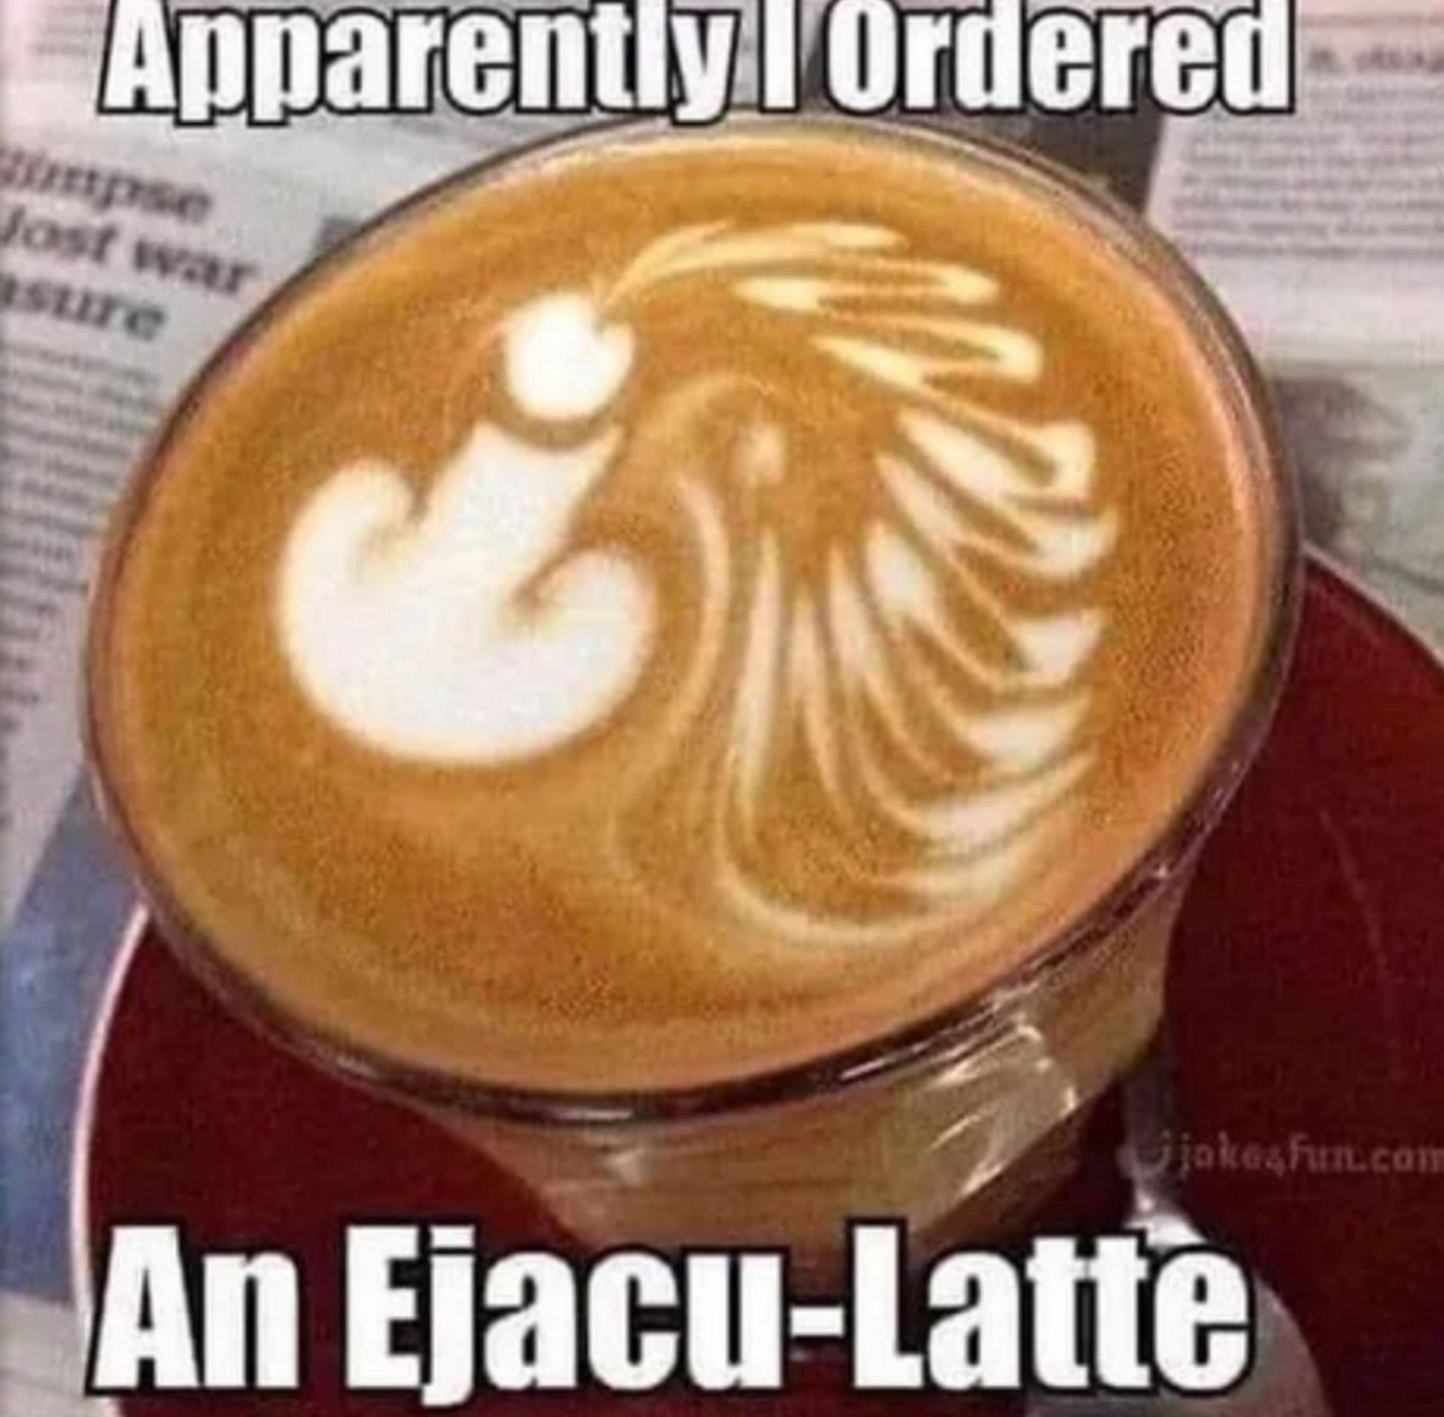 Cream my latte - meme